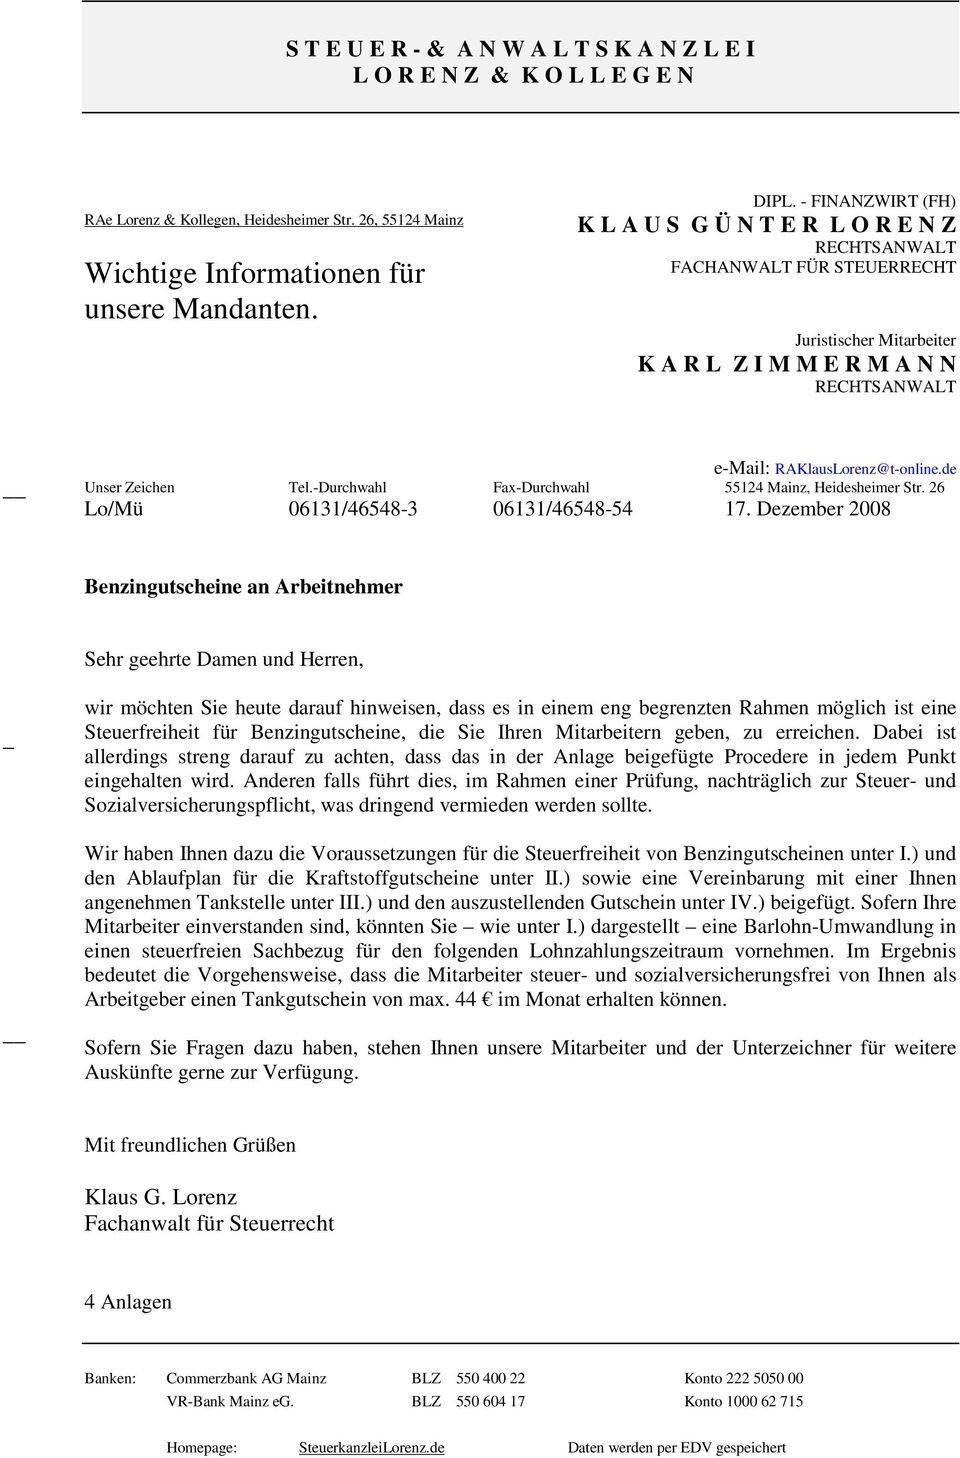 de Unser Zeichen Tel.-Durchwahl Fax-Durchwahl 55124 Mainz, Heidesheimer Str. 26 Lo/Mü 06131/46548-3 06131/46548-54 17.